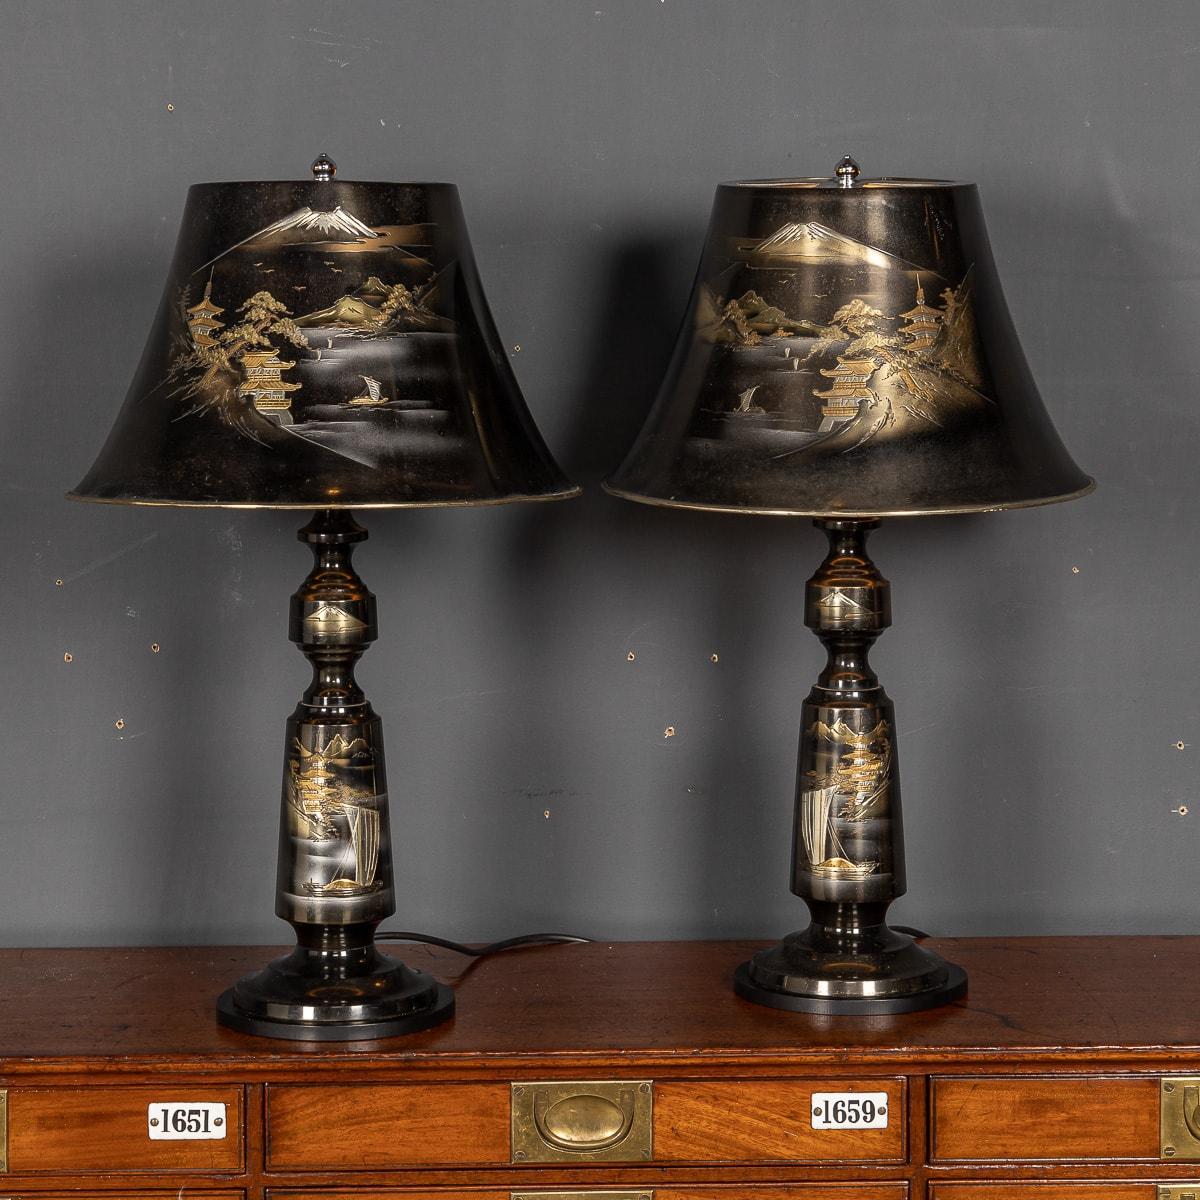 Superbe paire de lampes de table japonaises du milieu du 20e siècle, dans une finition laquée noire traditionnelle, avec une délicate représentation du Mont Fuji en or et en argent.

CONDITION
En très bon état - aucun dommage.

TAILLE
Diamètre de